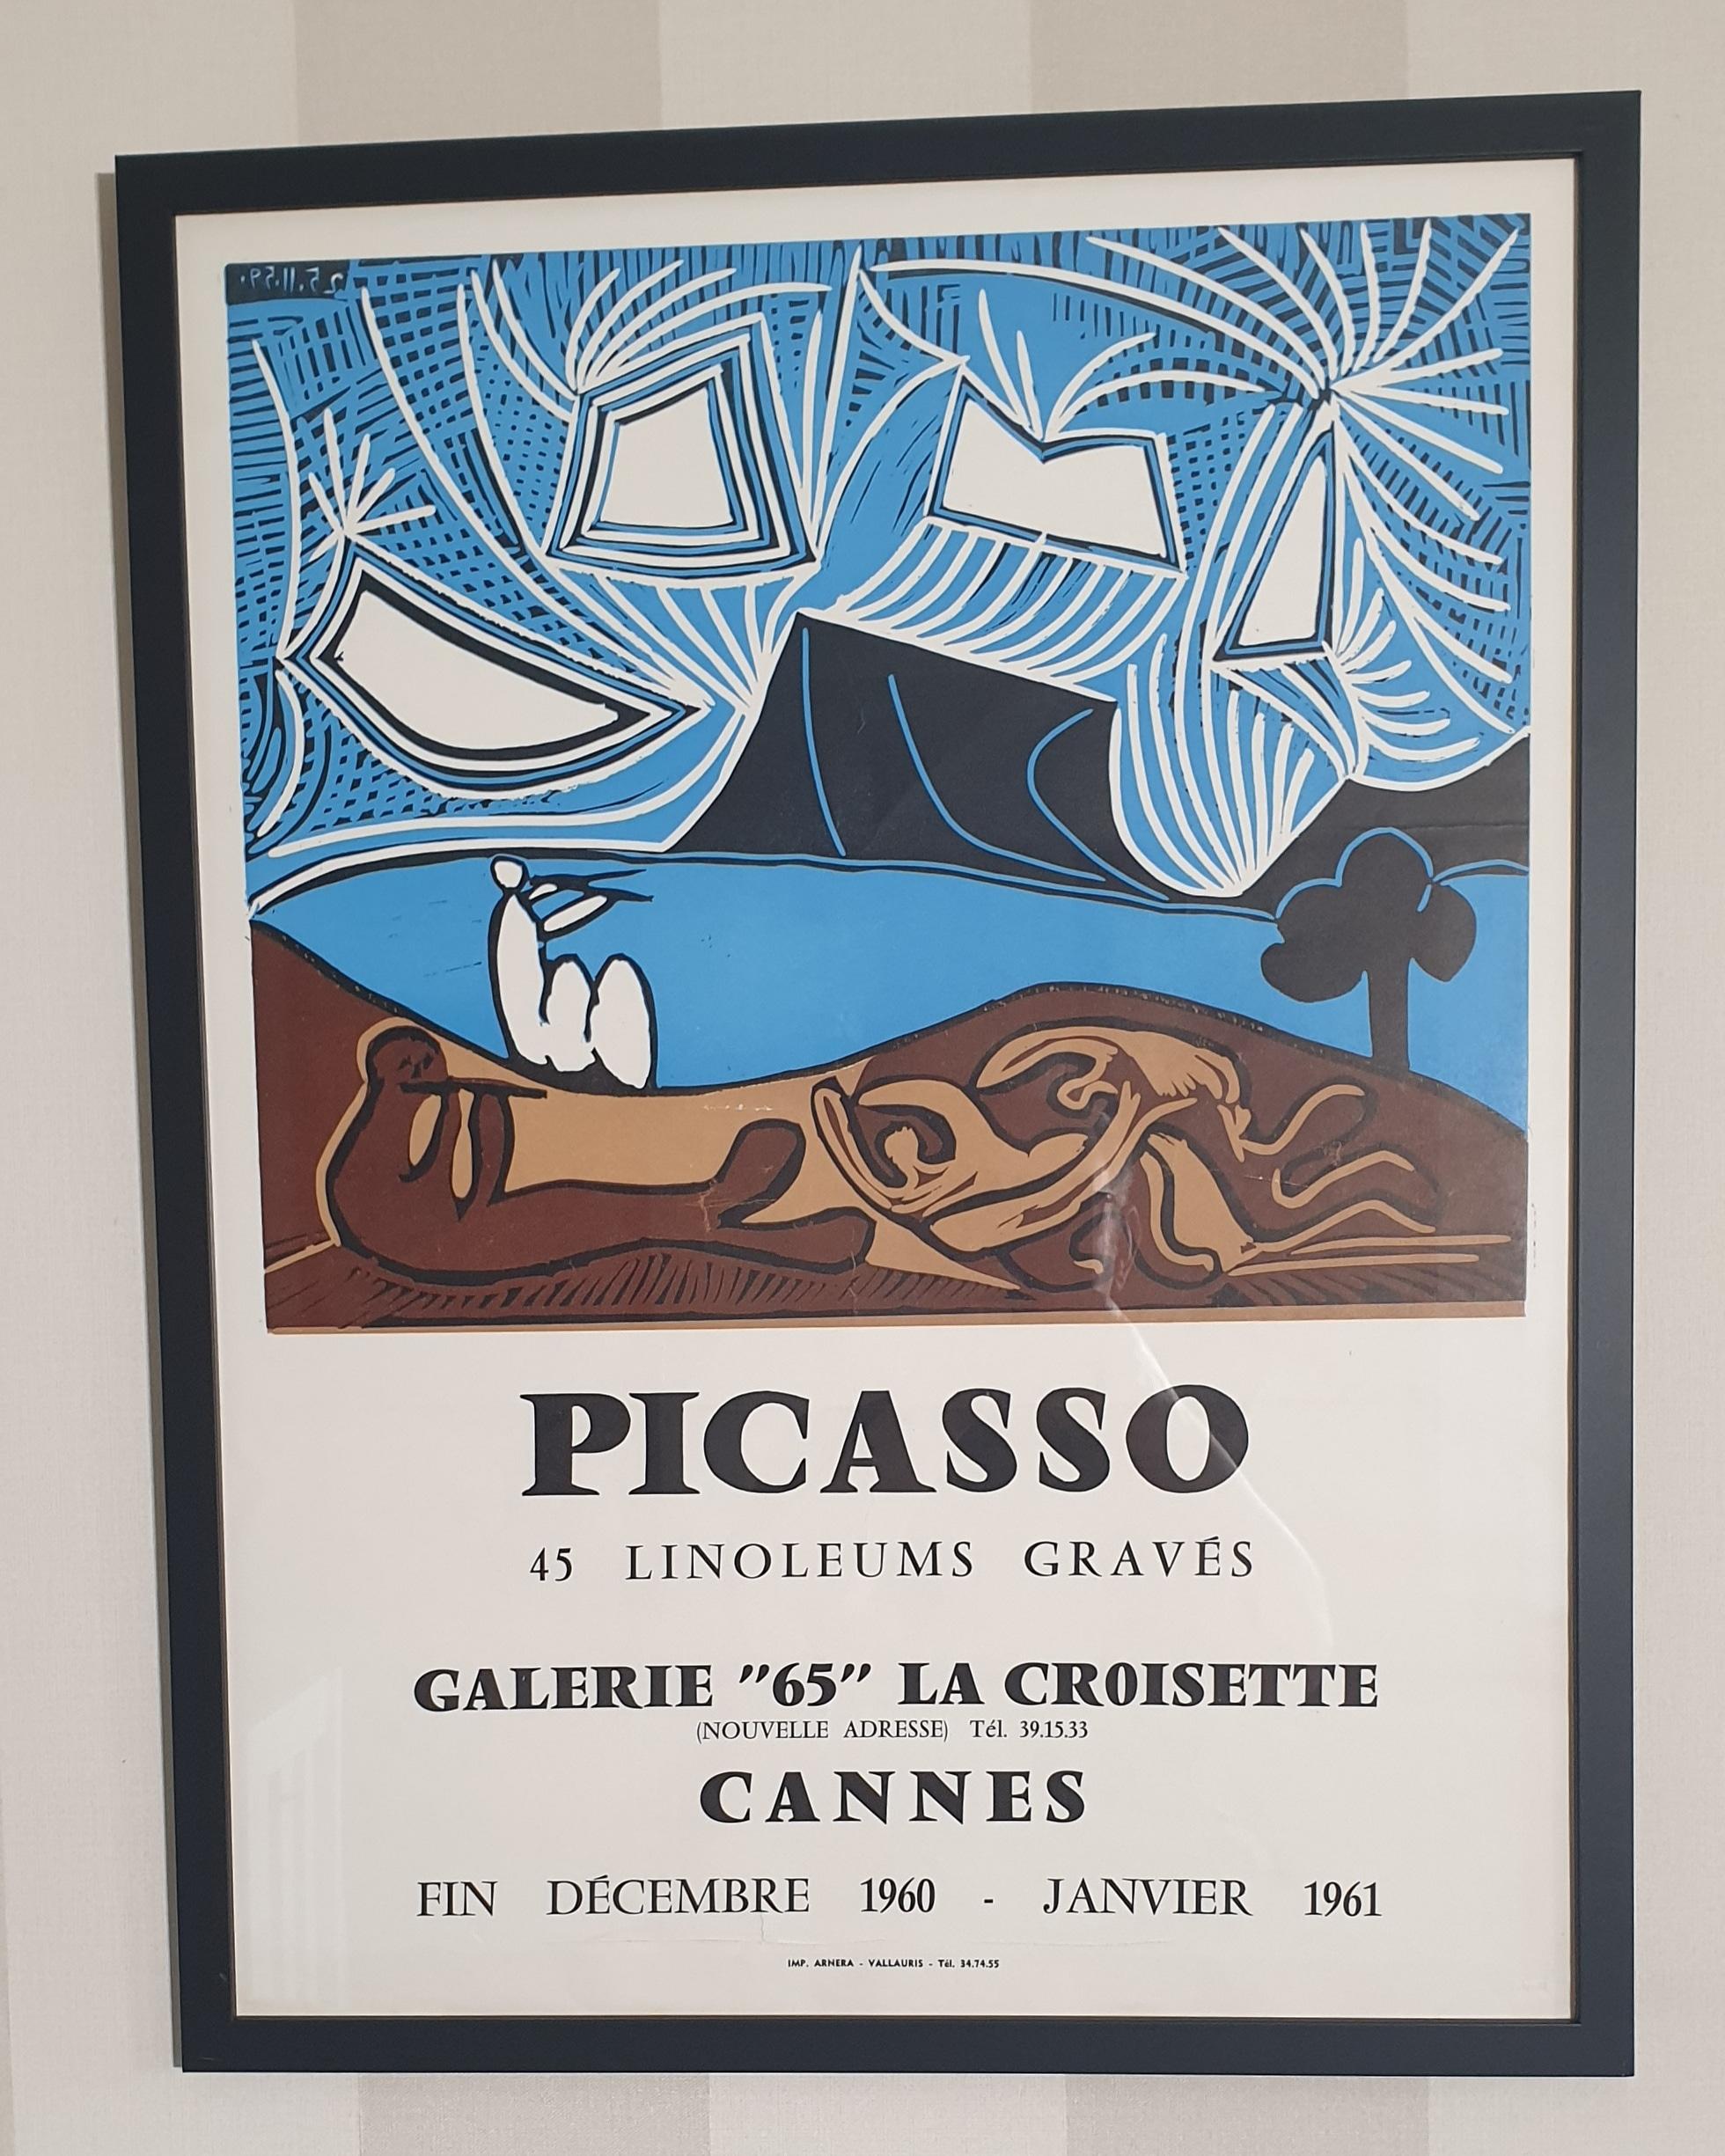 Dieses Plakat stammt von einer Picasso-Ausstellung im Jahr 1960. Das Plakat wurde erstellt, um die Ausstellung der Linolschnitte von Pablo Picasso zu bewerben. Plakate aus dieser Zeit sind heute rar. Das Plakat wurde von dem renommierten